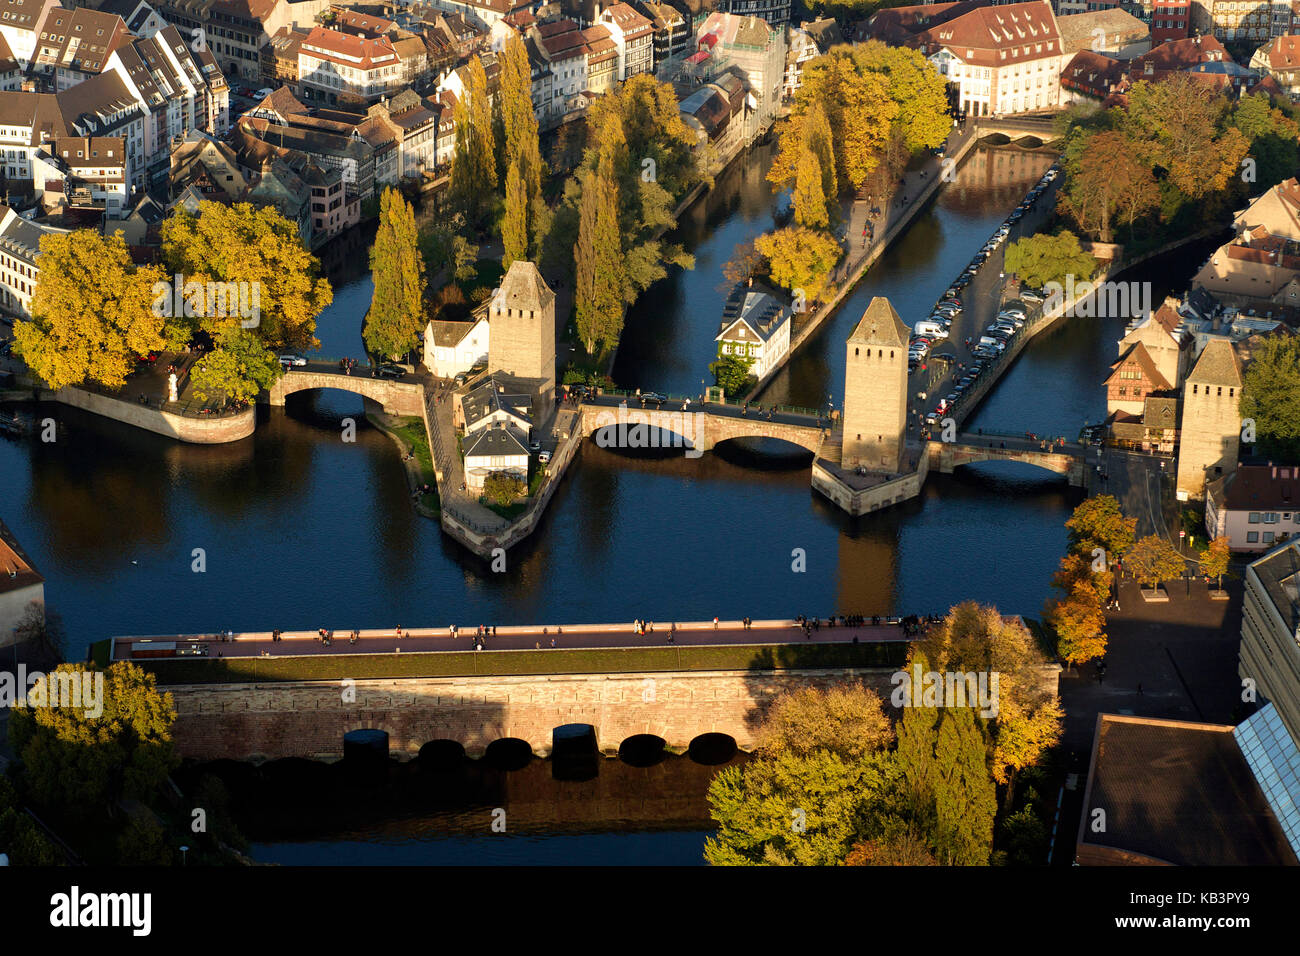 Francia, BAS RHIN, Strasburgo, città vecchia elencati come patrimonio mondiale dall' UNESCO, ponti coperto oltre il fiume Ill (aria di vista) Foto Stock